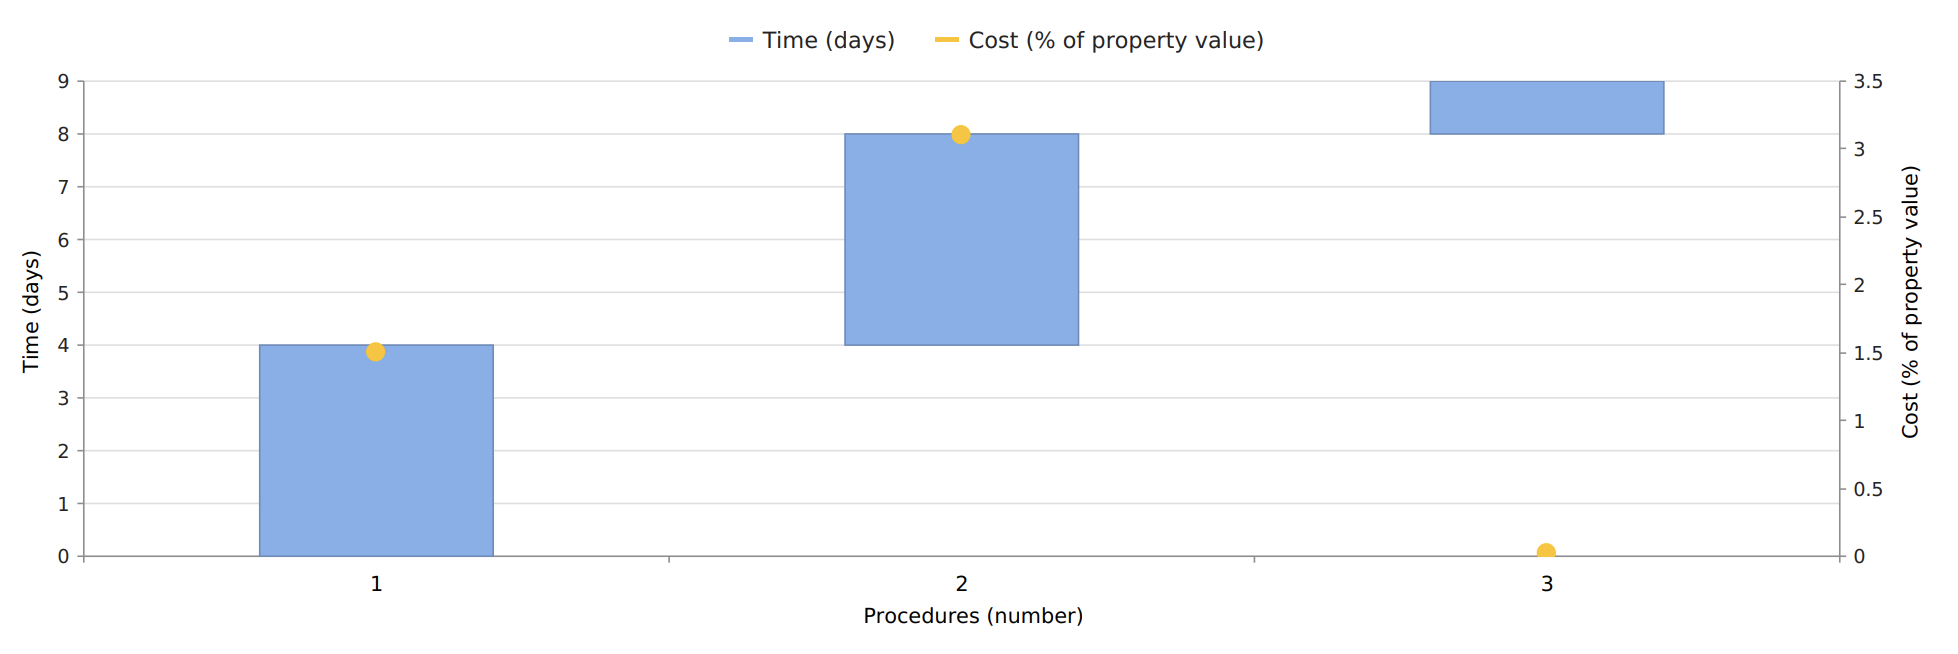 Figure – Registering Property in Beijing – Procedure, Time and Cost